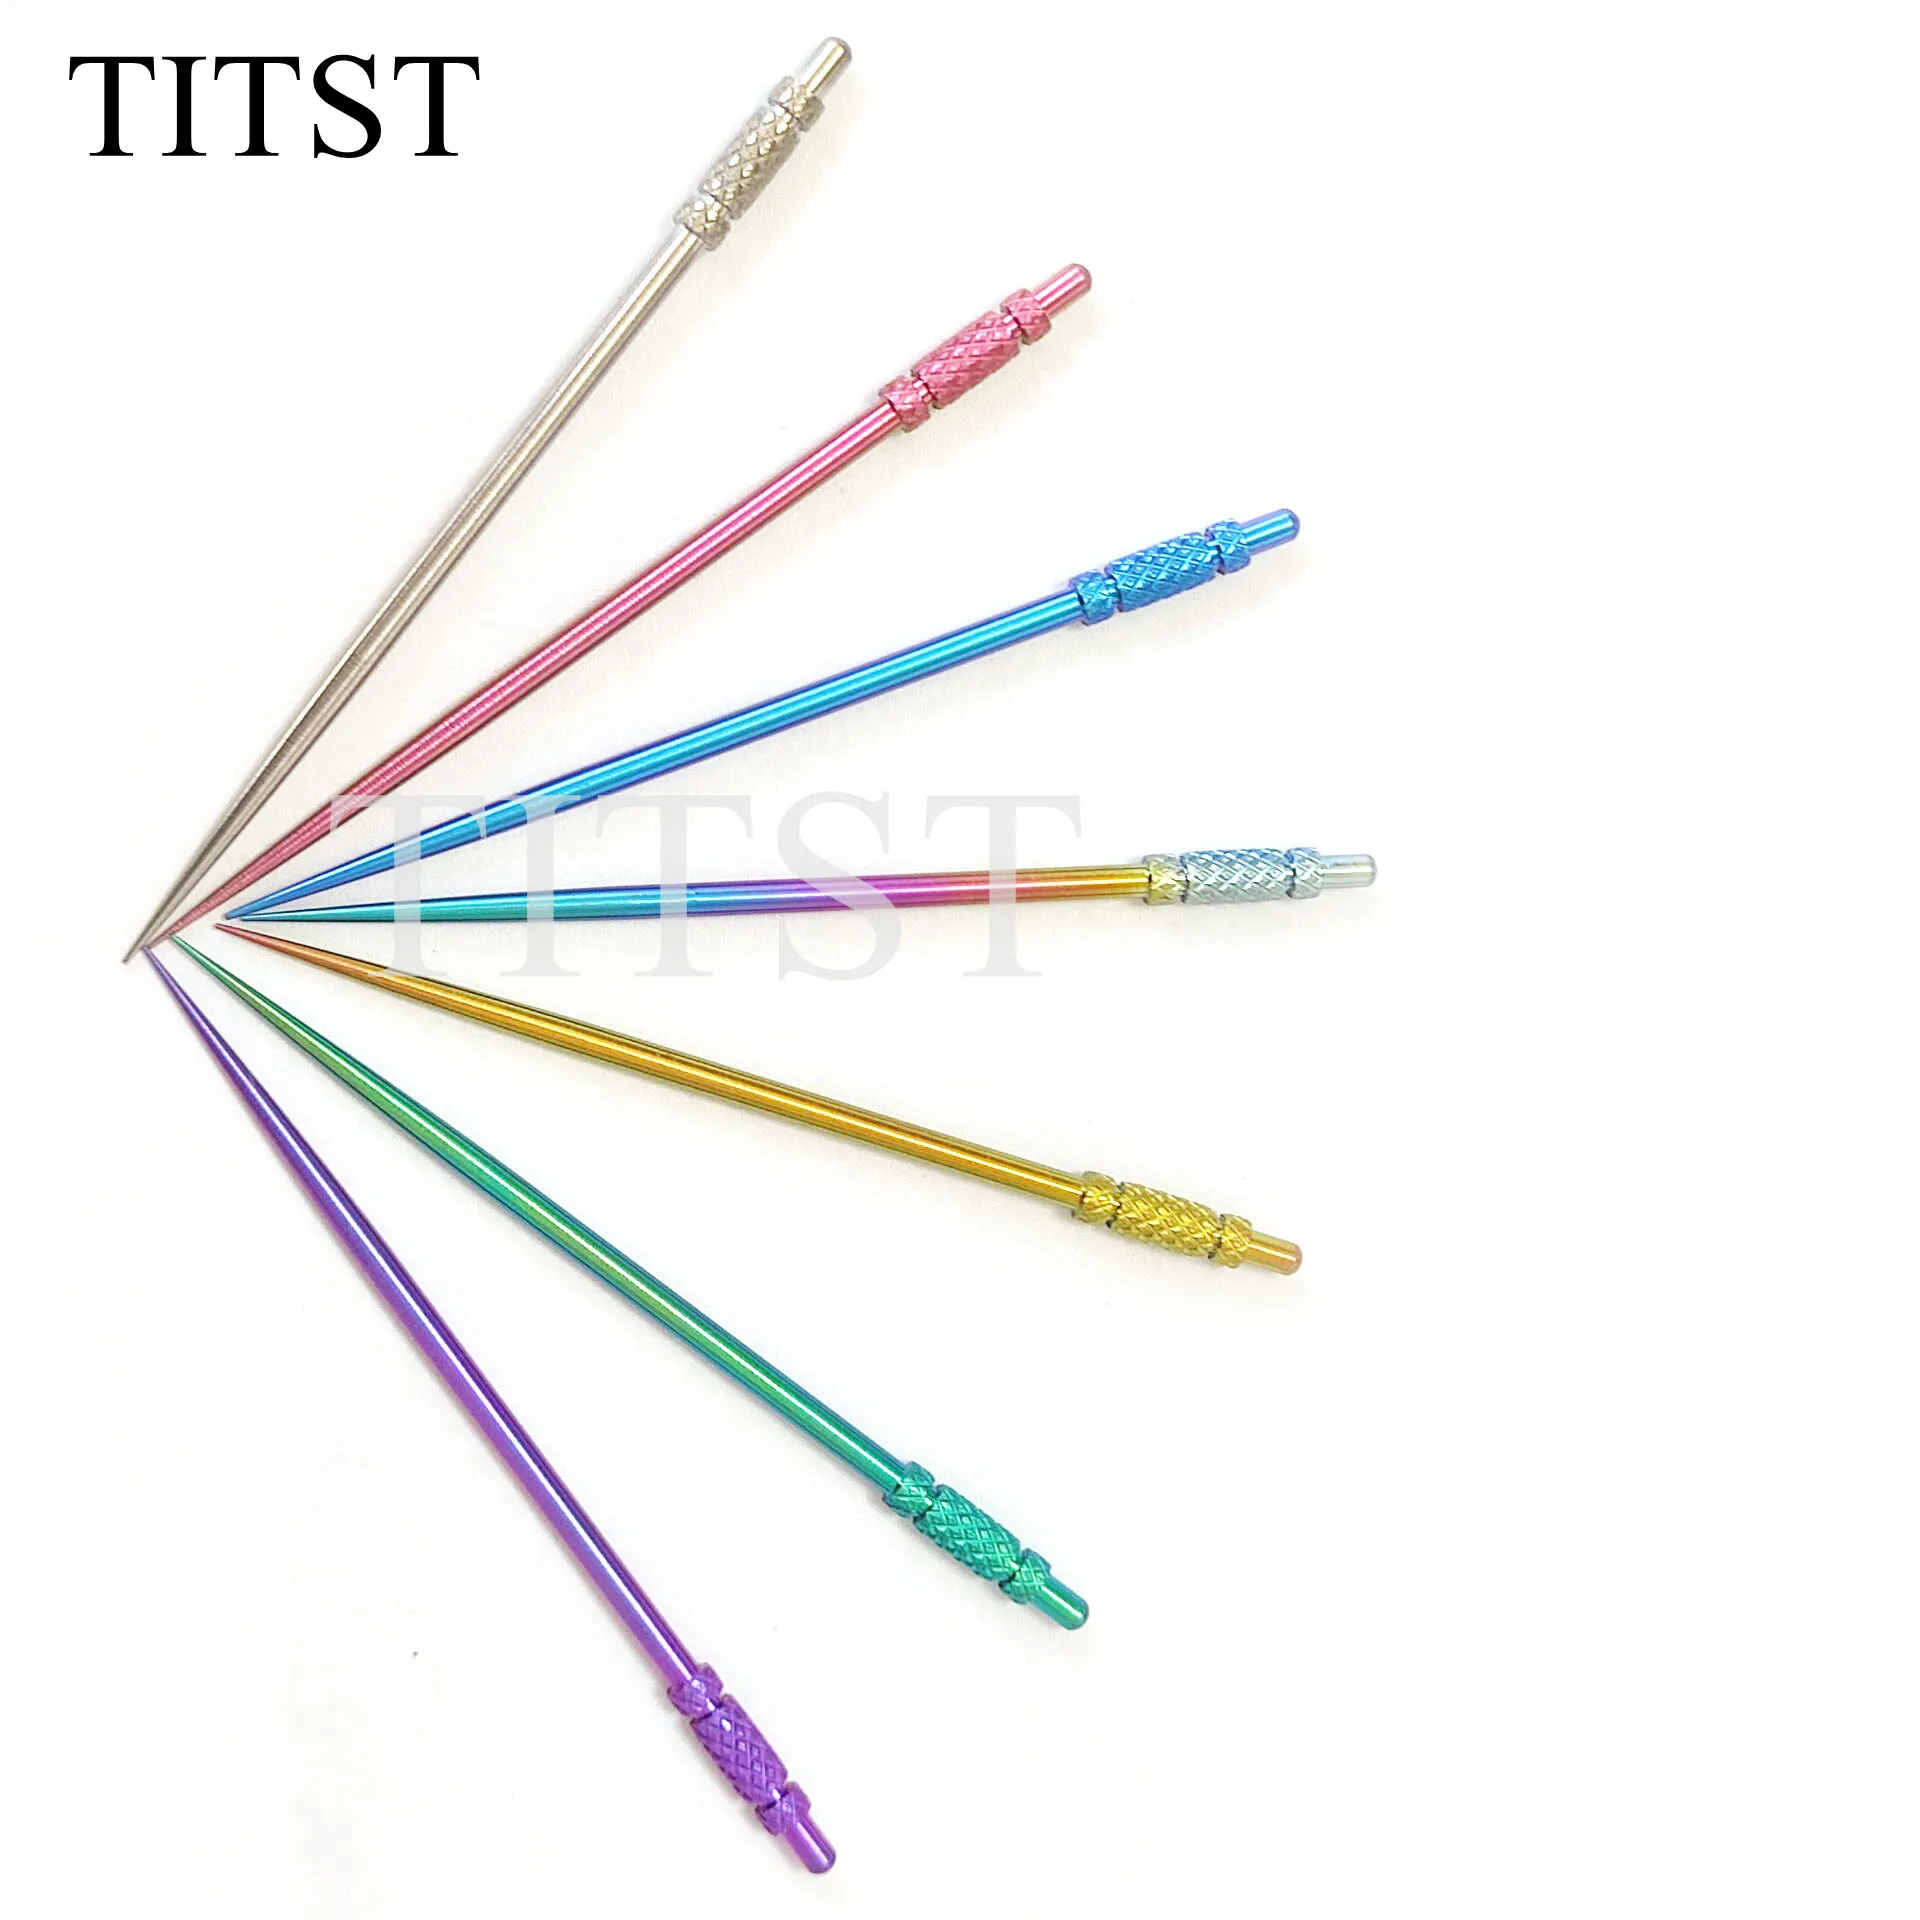 TITST, титановый tuсук gigi, экологически чистый ультралегкий брикет, зубочистка из титанового сплава (один комплект = 2 шт.)